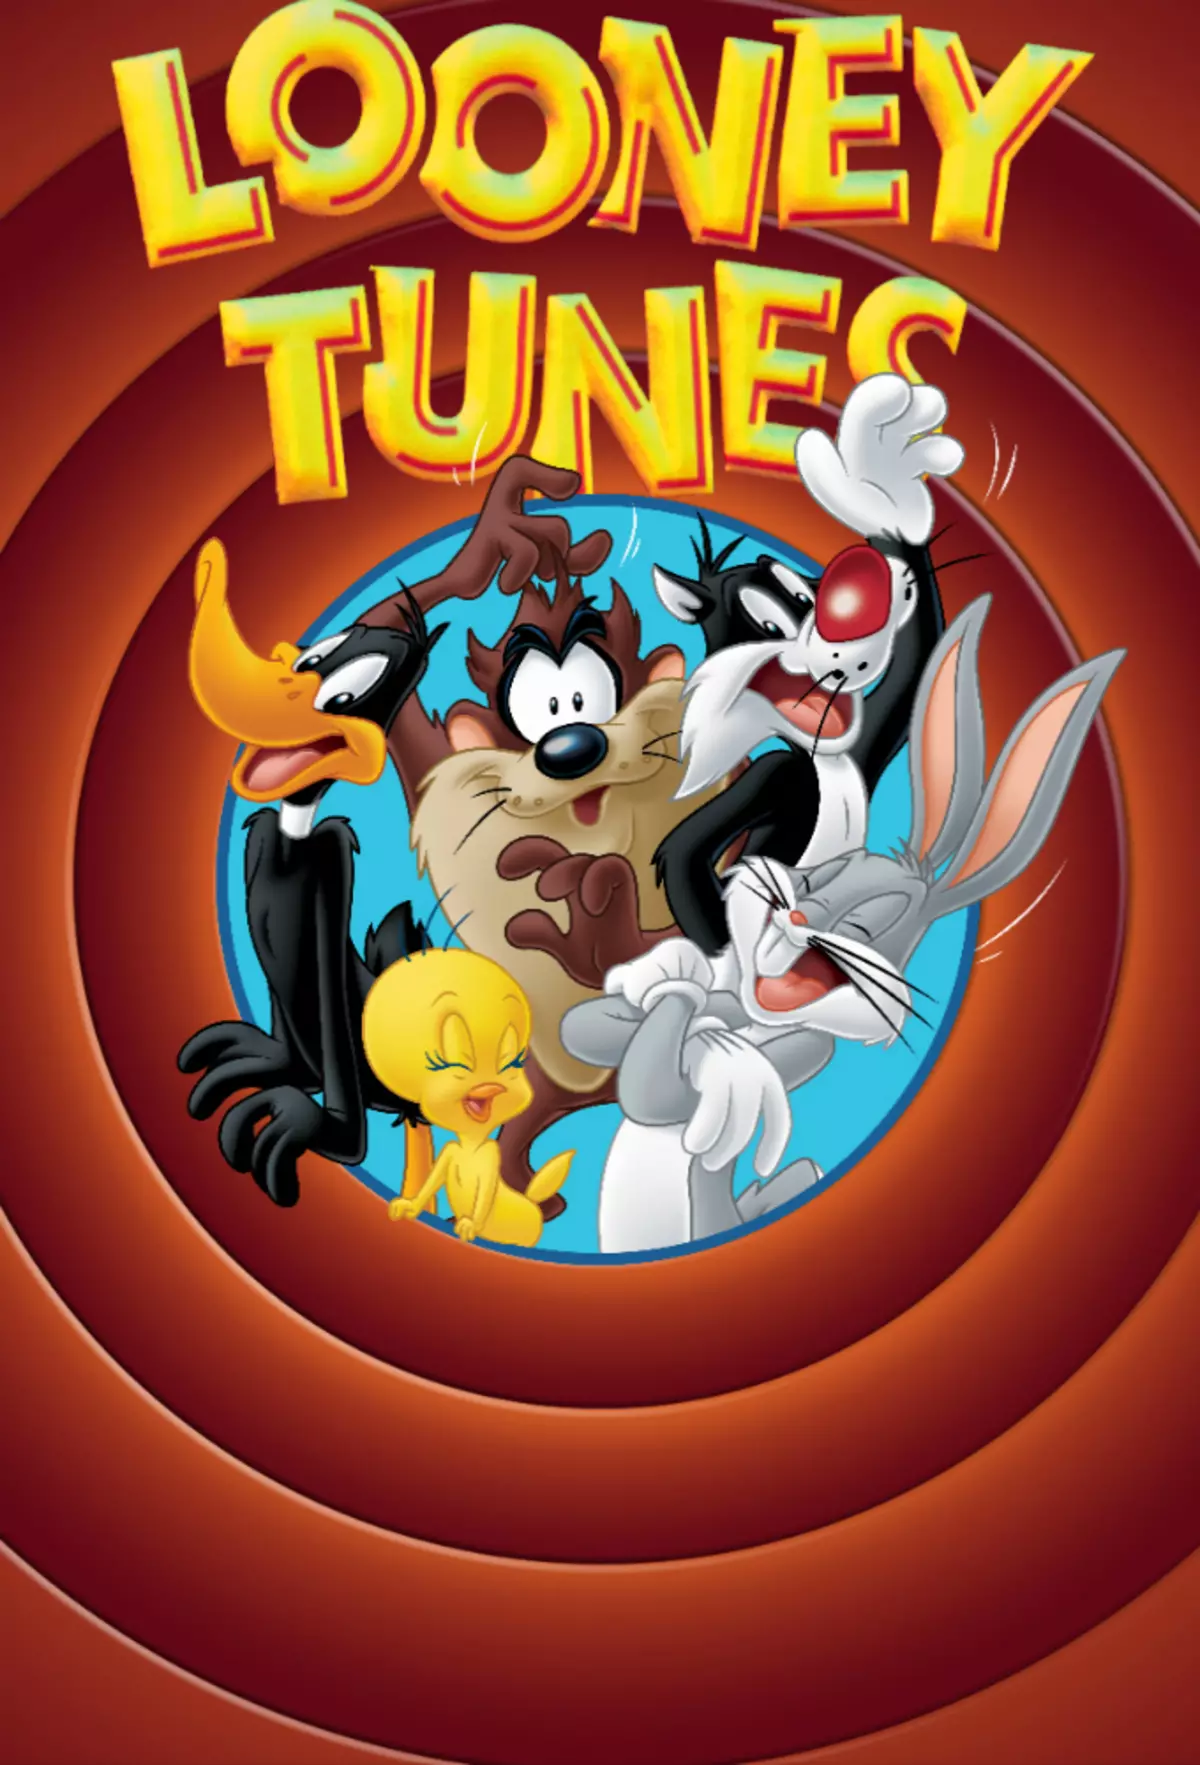 Looney Tunes HBO میکس میں دیکھنے کے ذریعے 